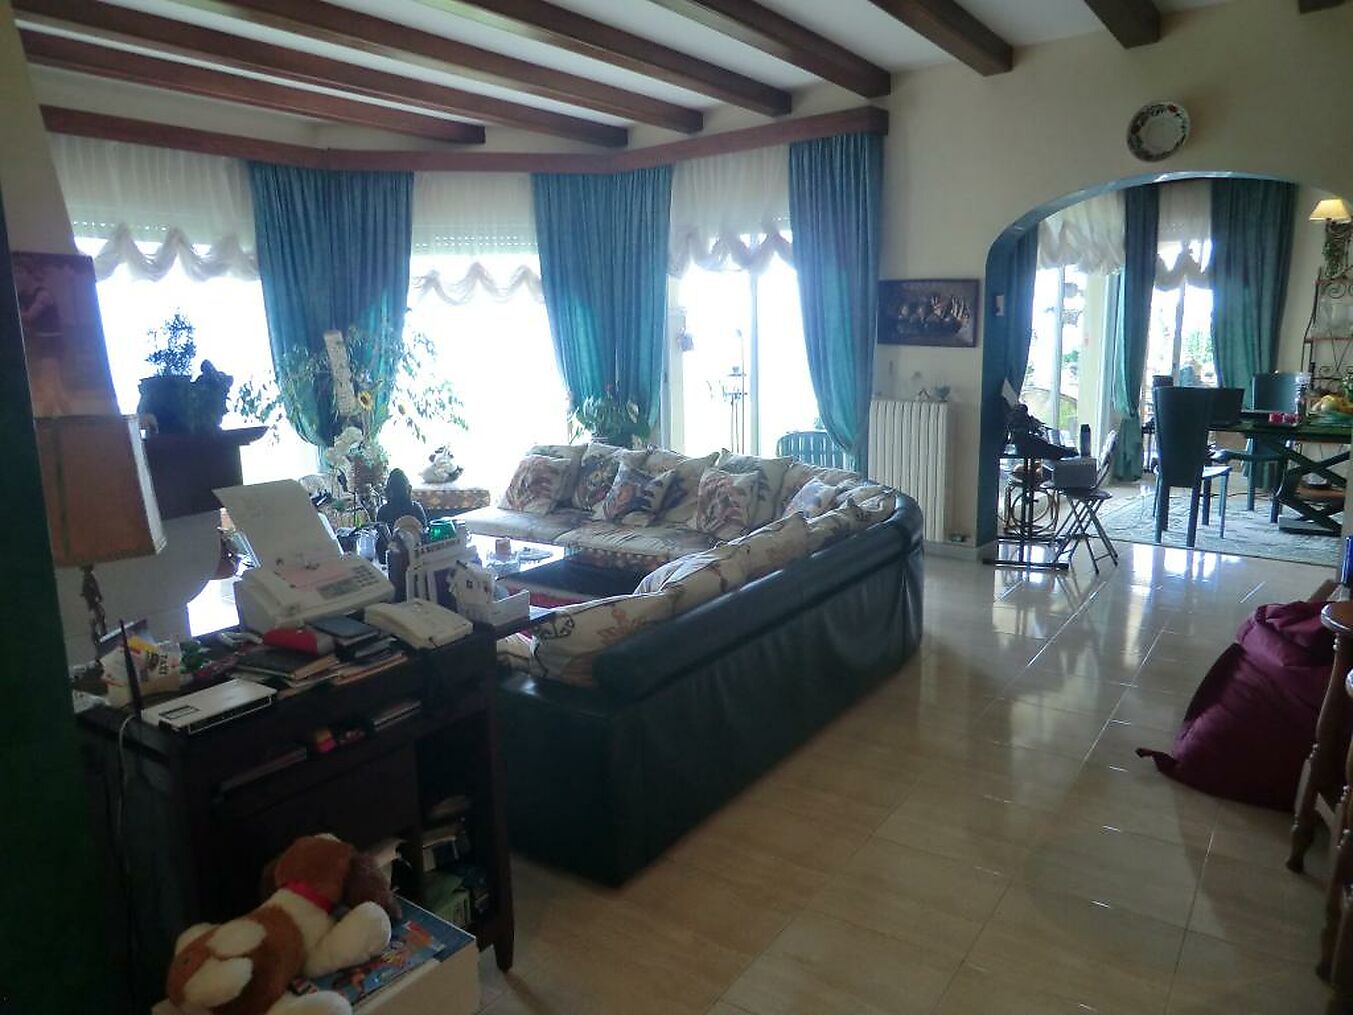 Incroyable villa de 3 chambres à vendre à Playa de Aro.